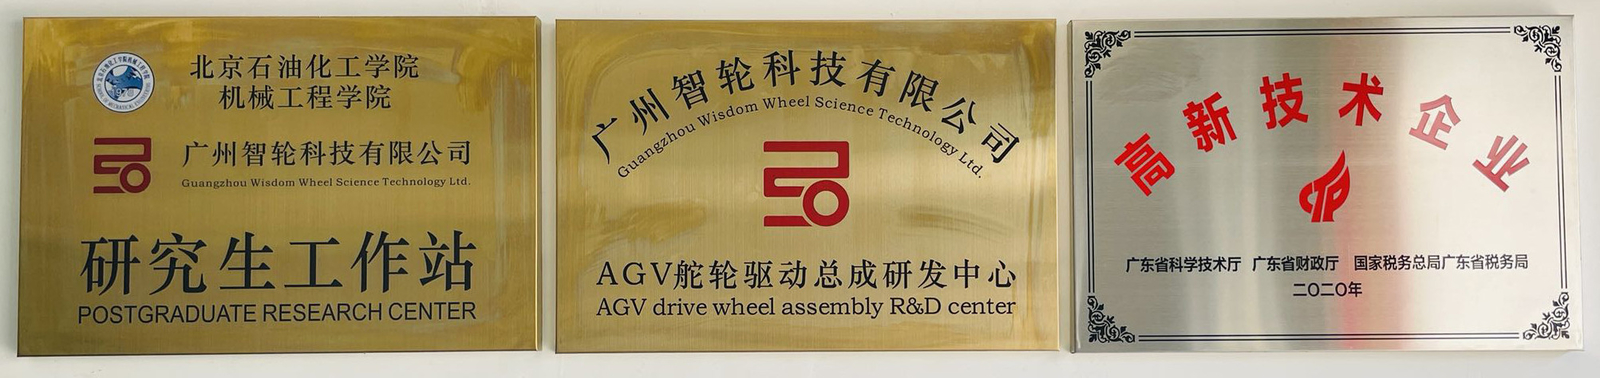 Guangzhou Wisdom Wheel Science Technology Ltd. dây chuyền sản xuất nhà máy